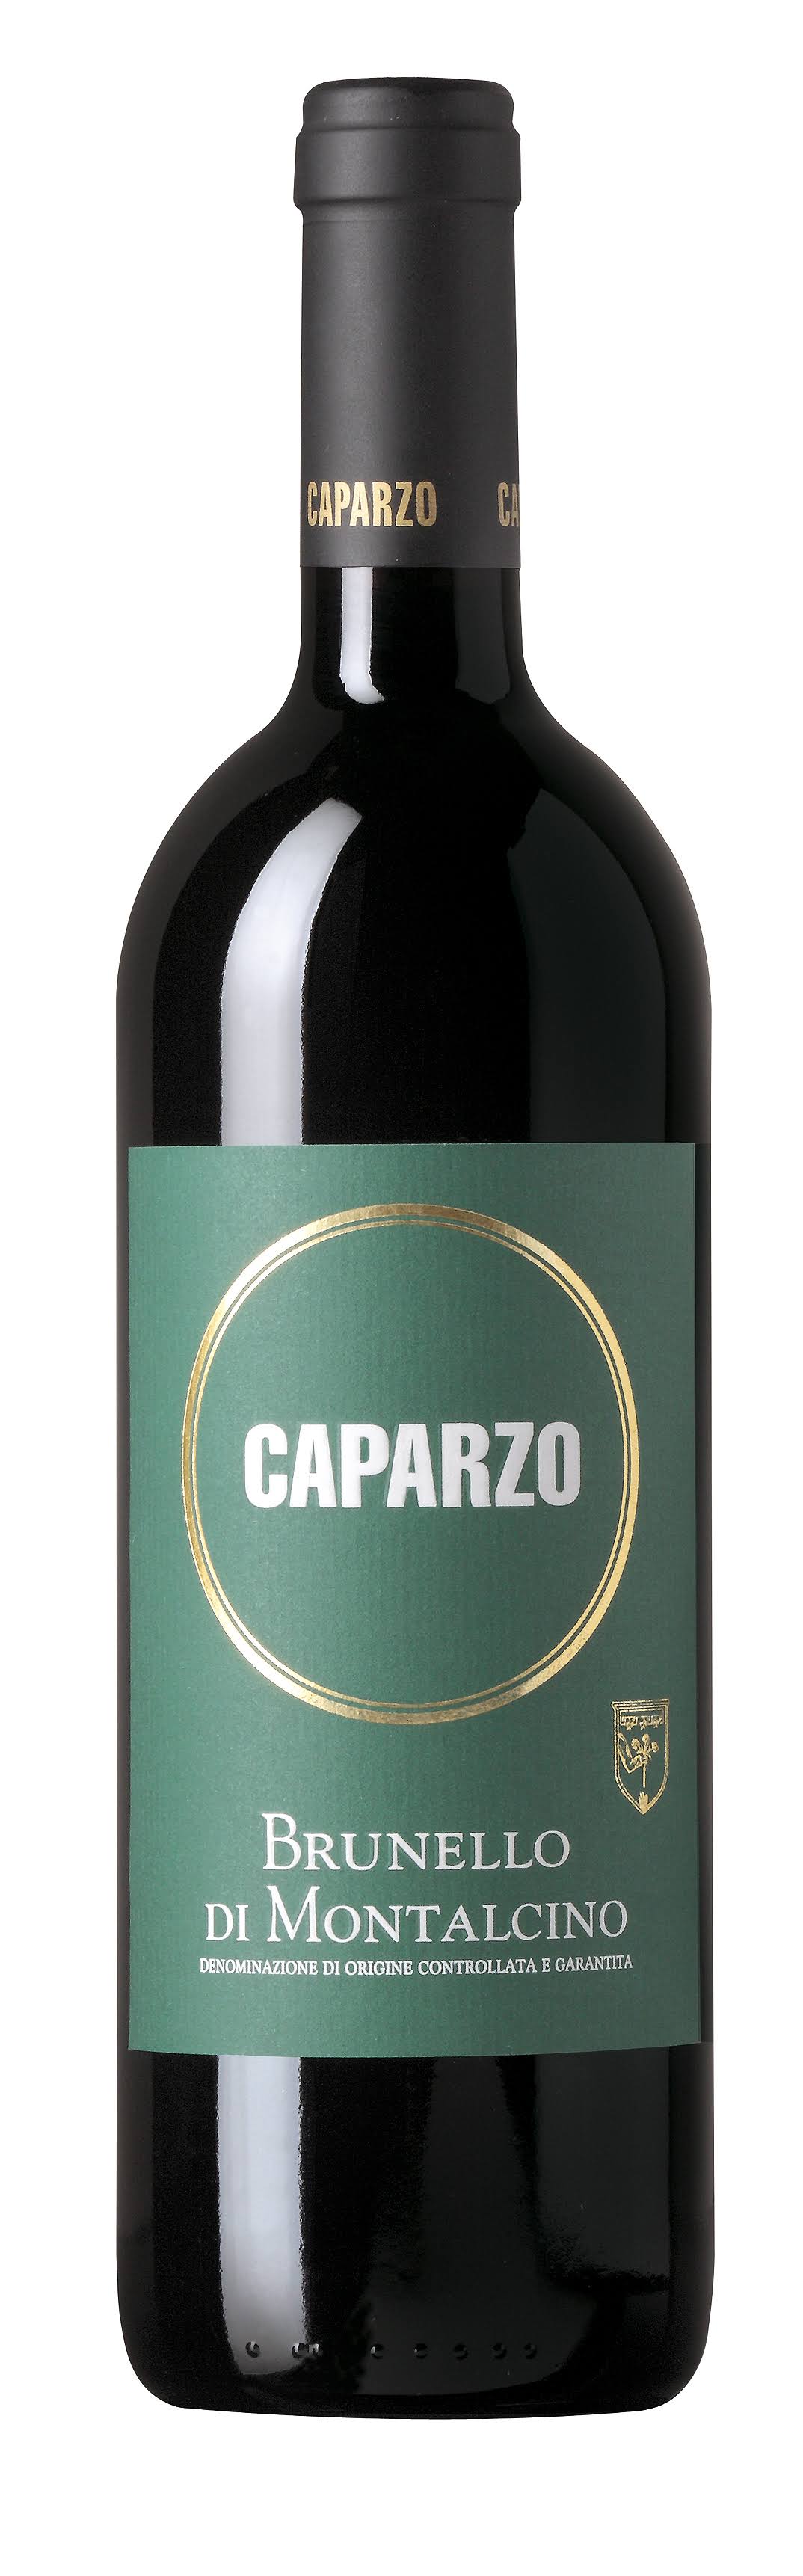 Caparzo Brunello Di Montalcino 2017 (750 ml)